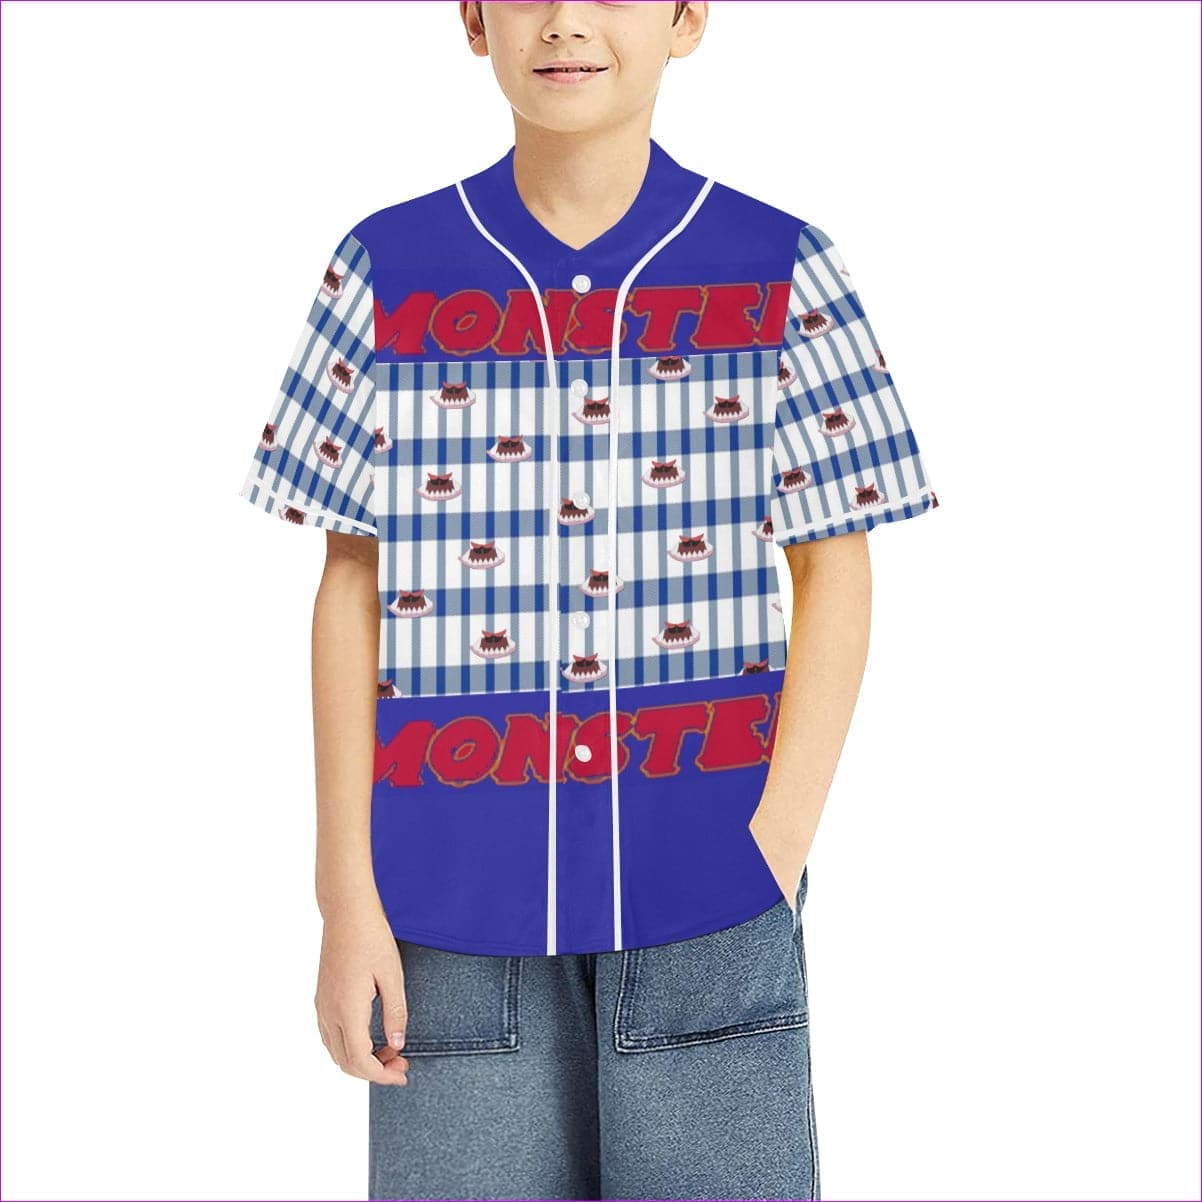 m3 - white Kid's All Over Print Baseball Jersey(ModelT50) - Monster Kids Kids Baseball Jersey - 3 options - kids tee at TFC&H Co.